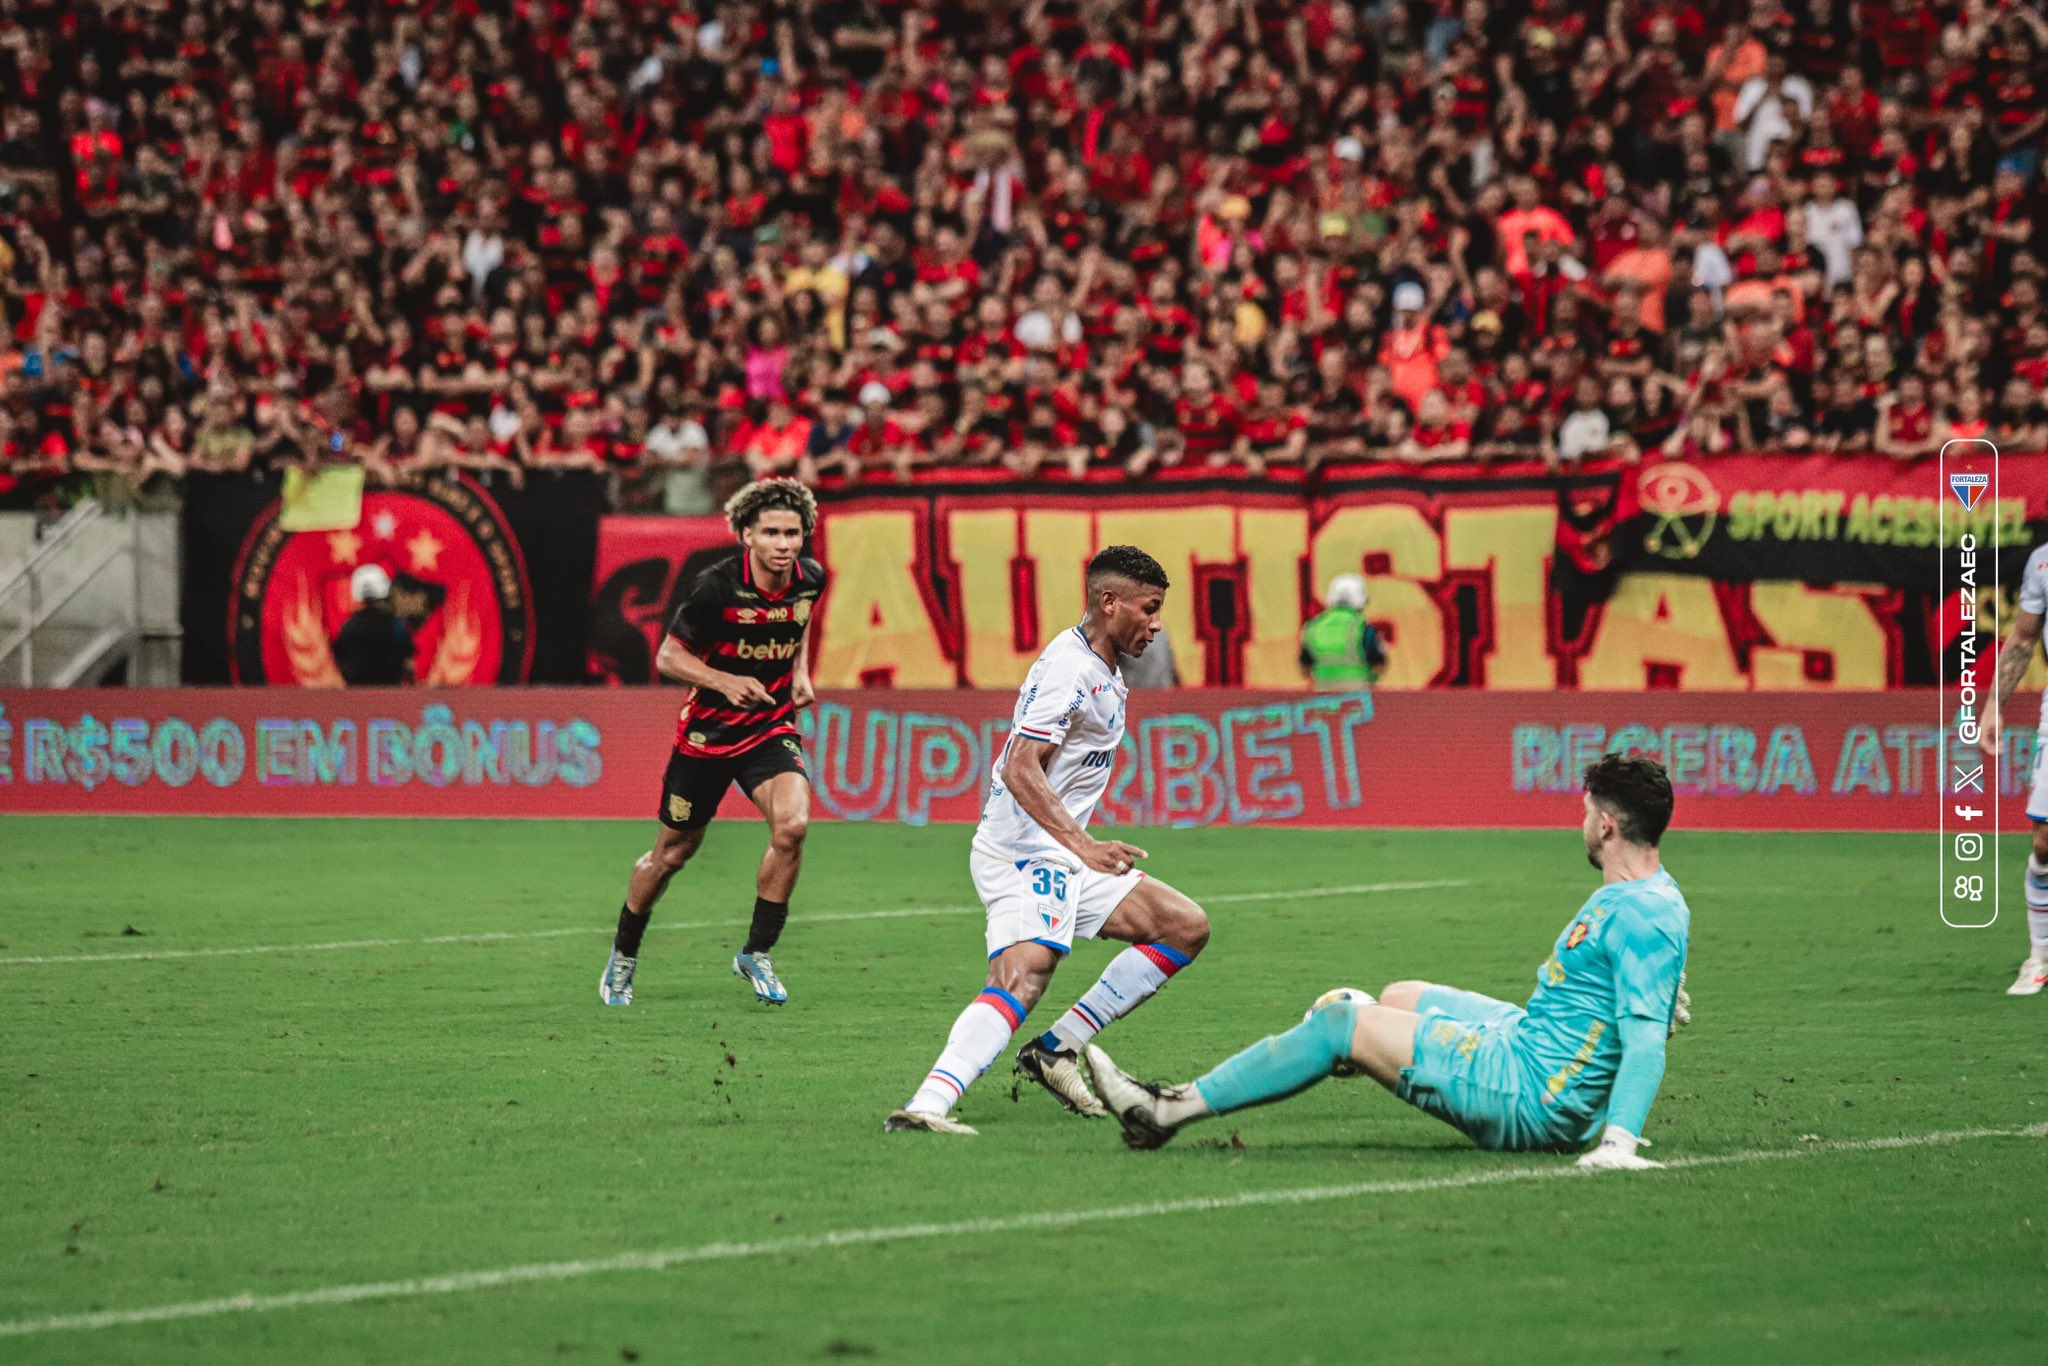 Hércules dribla o goleiro para marcar seu gol. (Foto: Leonardo Moreira/Fortaleza)